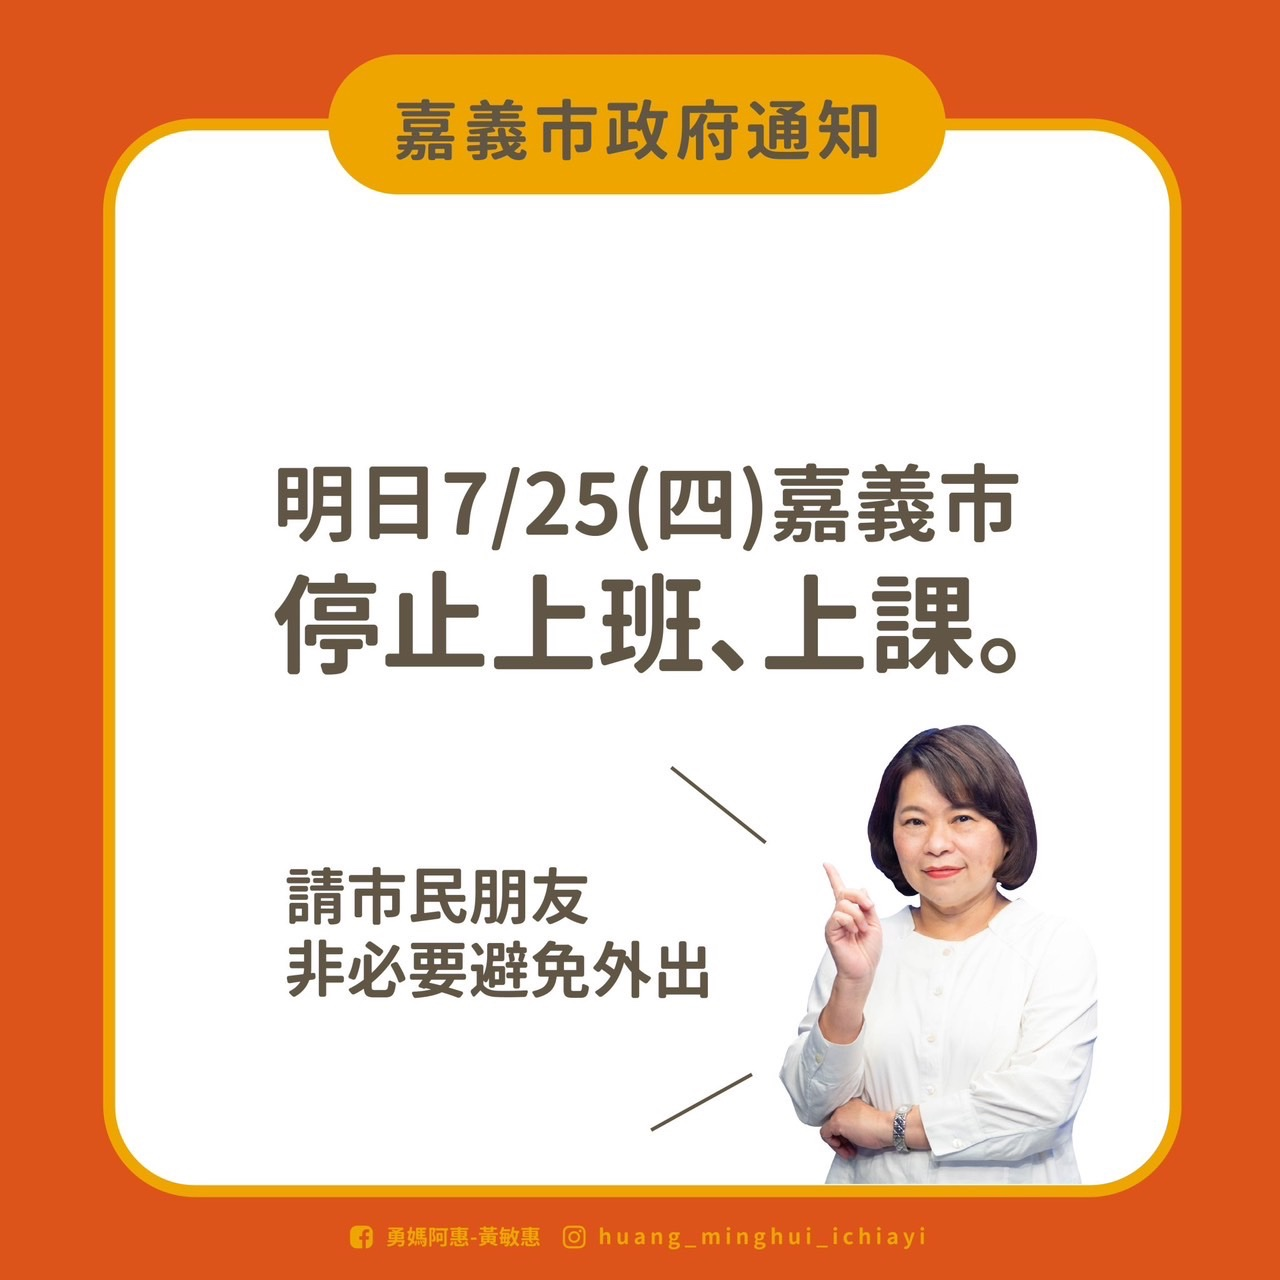 《颱風停班公告》7/25(四)輔具中心暫停服務1日